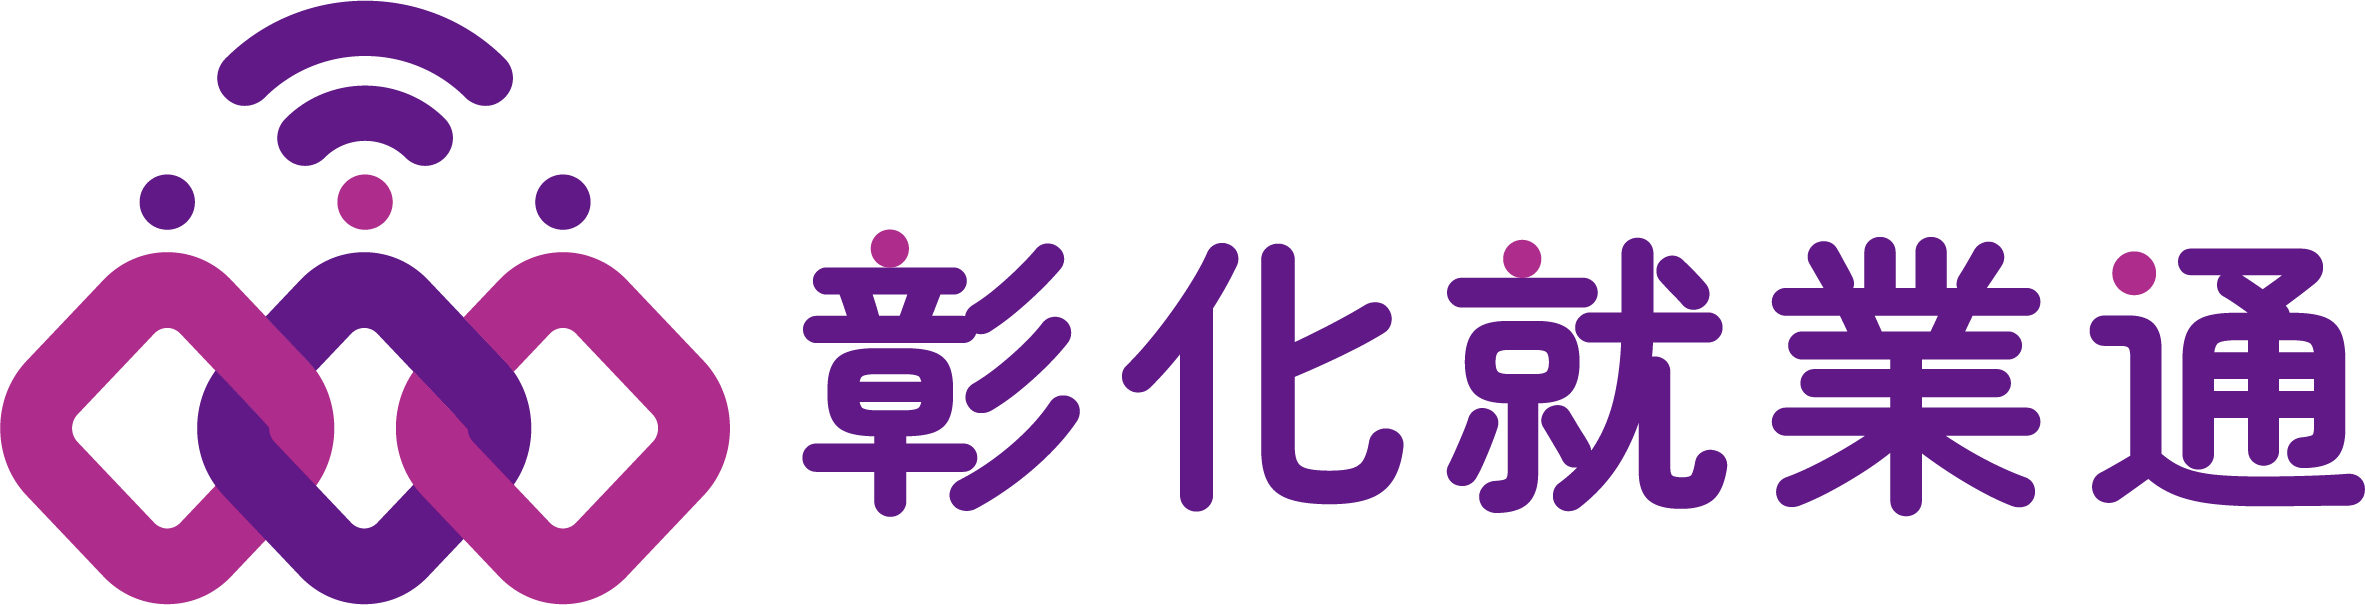 彰化就業通平台 logo